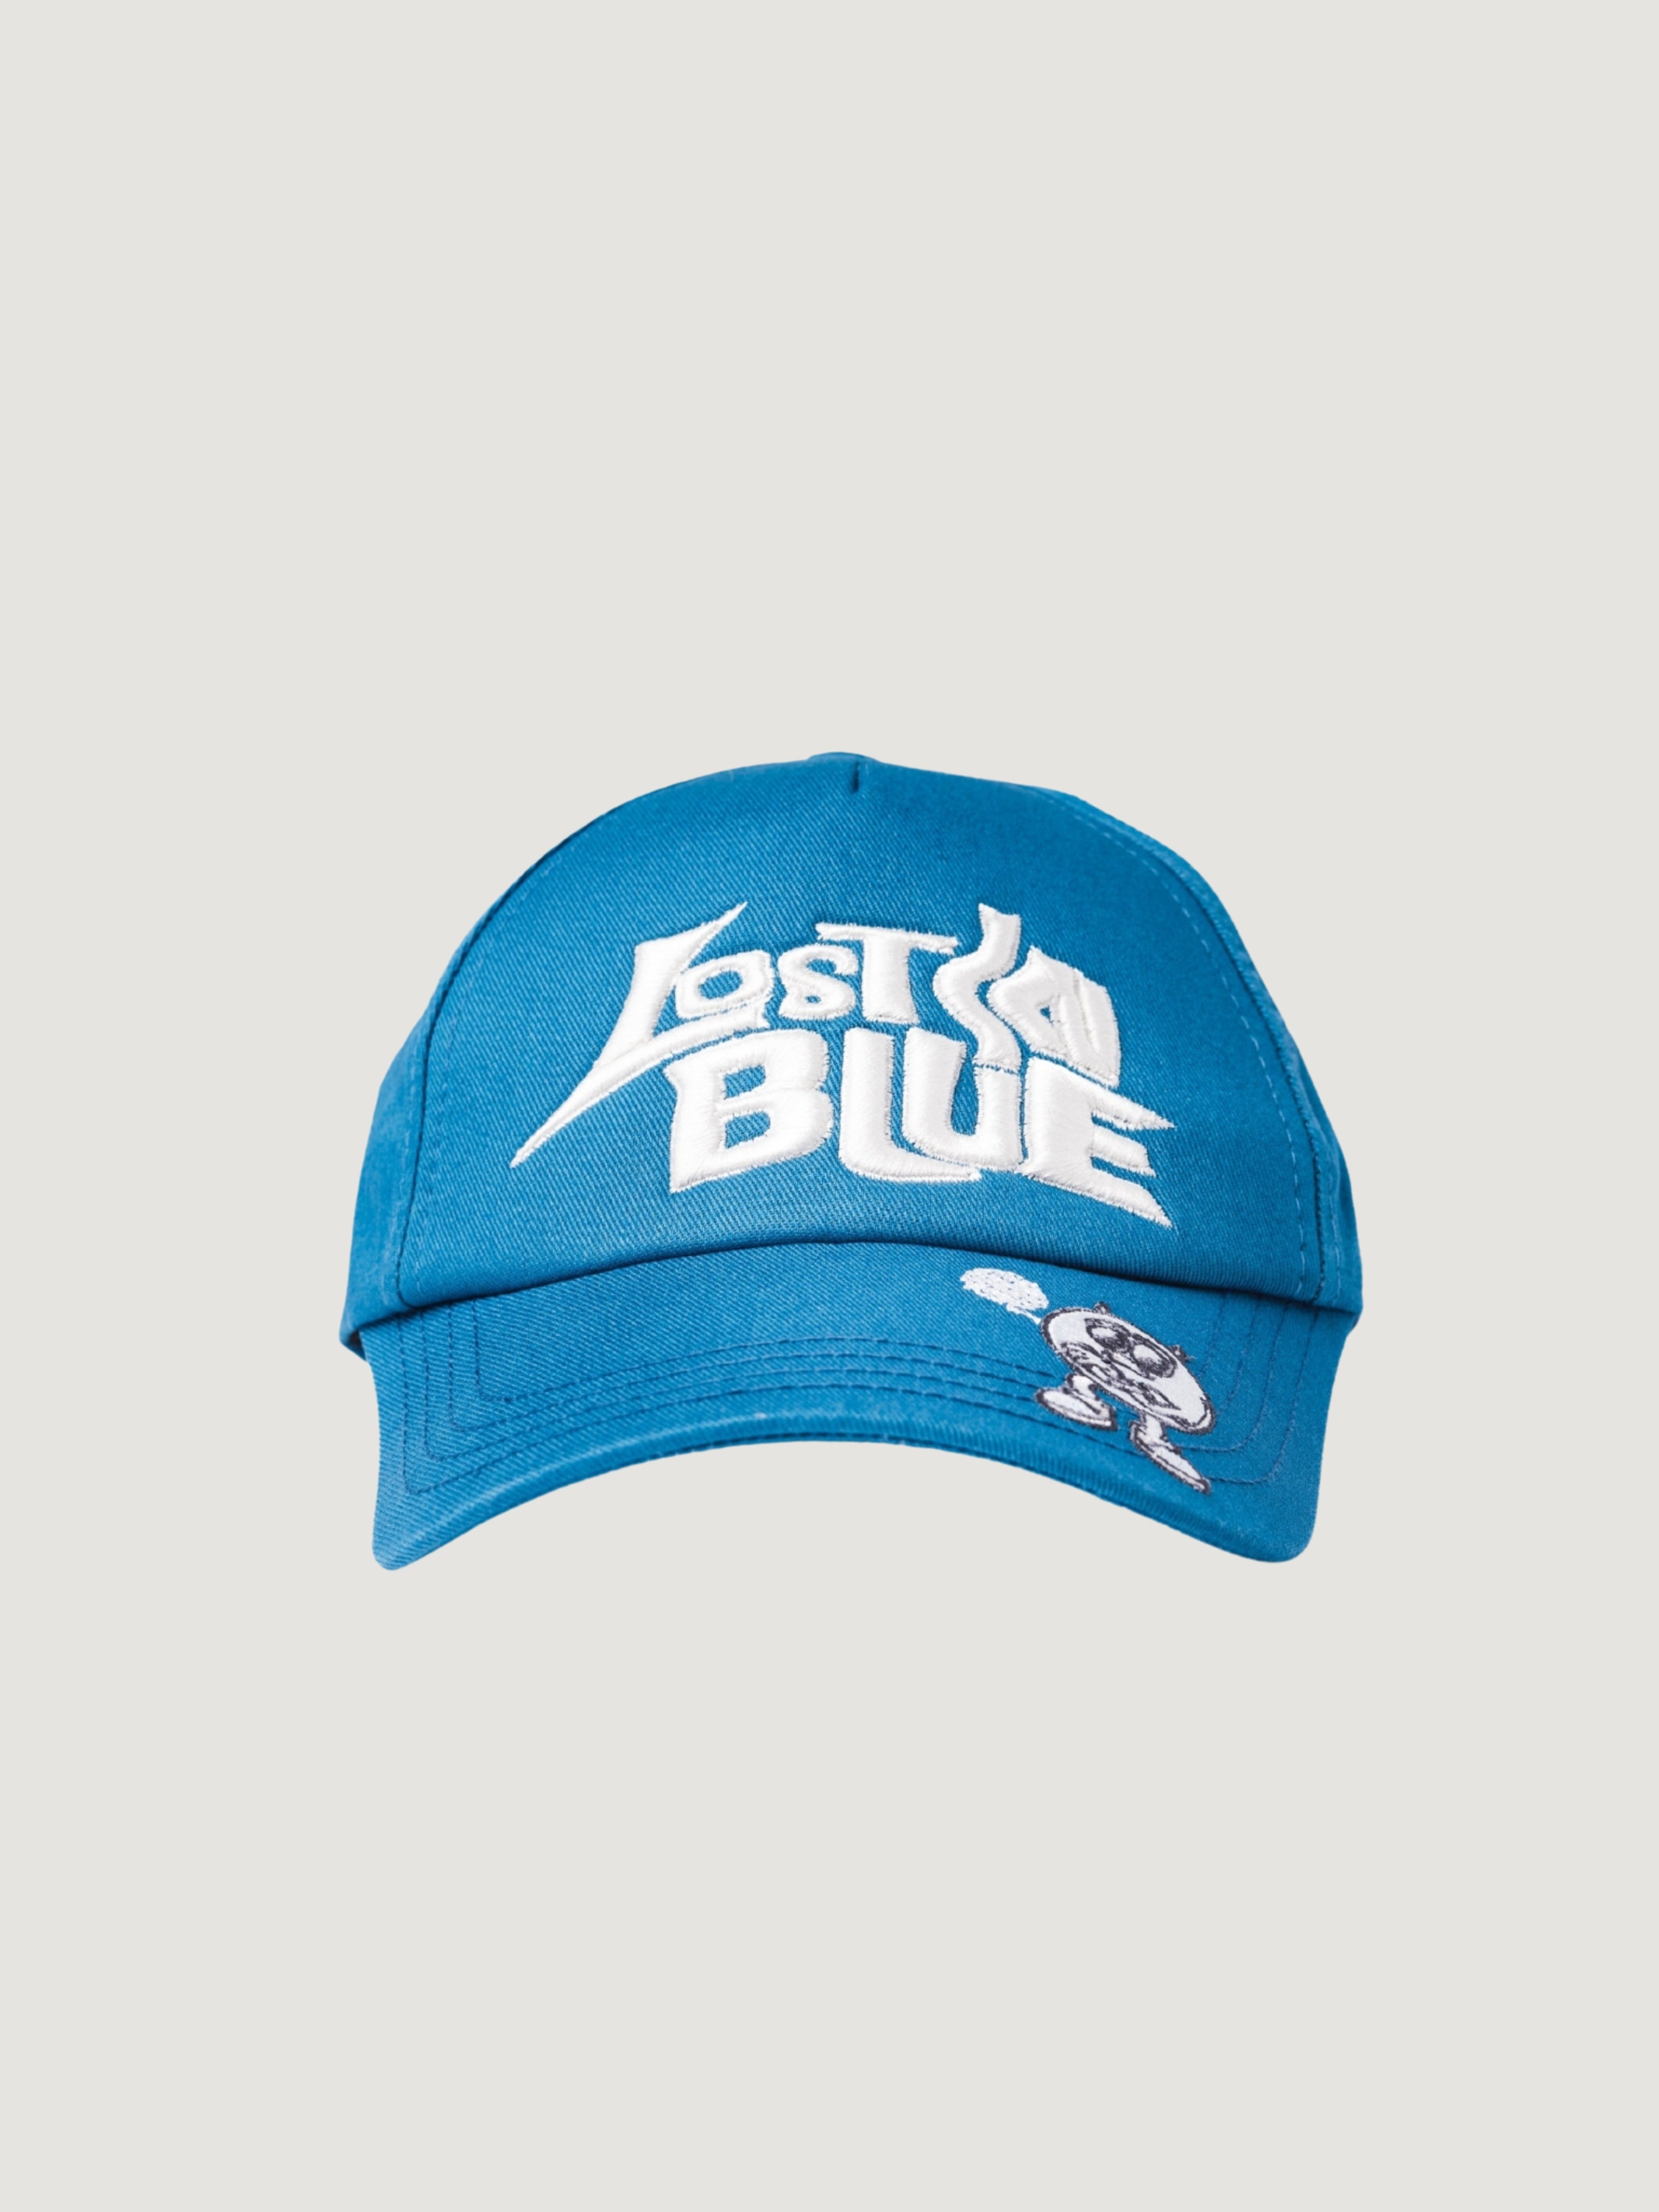 LOST IN BLUE CAP BLUE - ATTODE